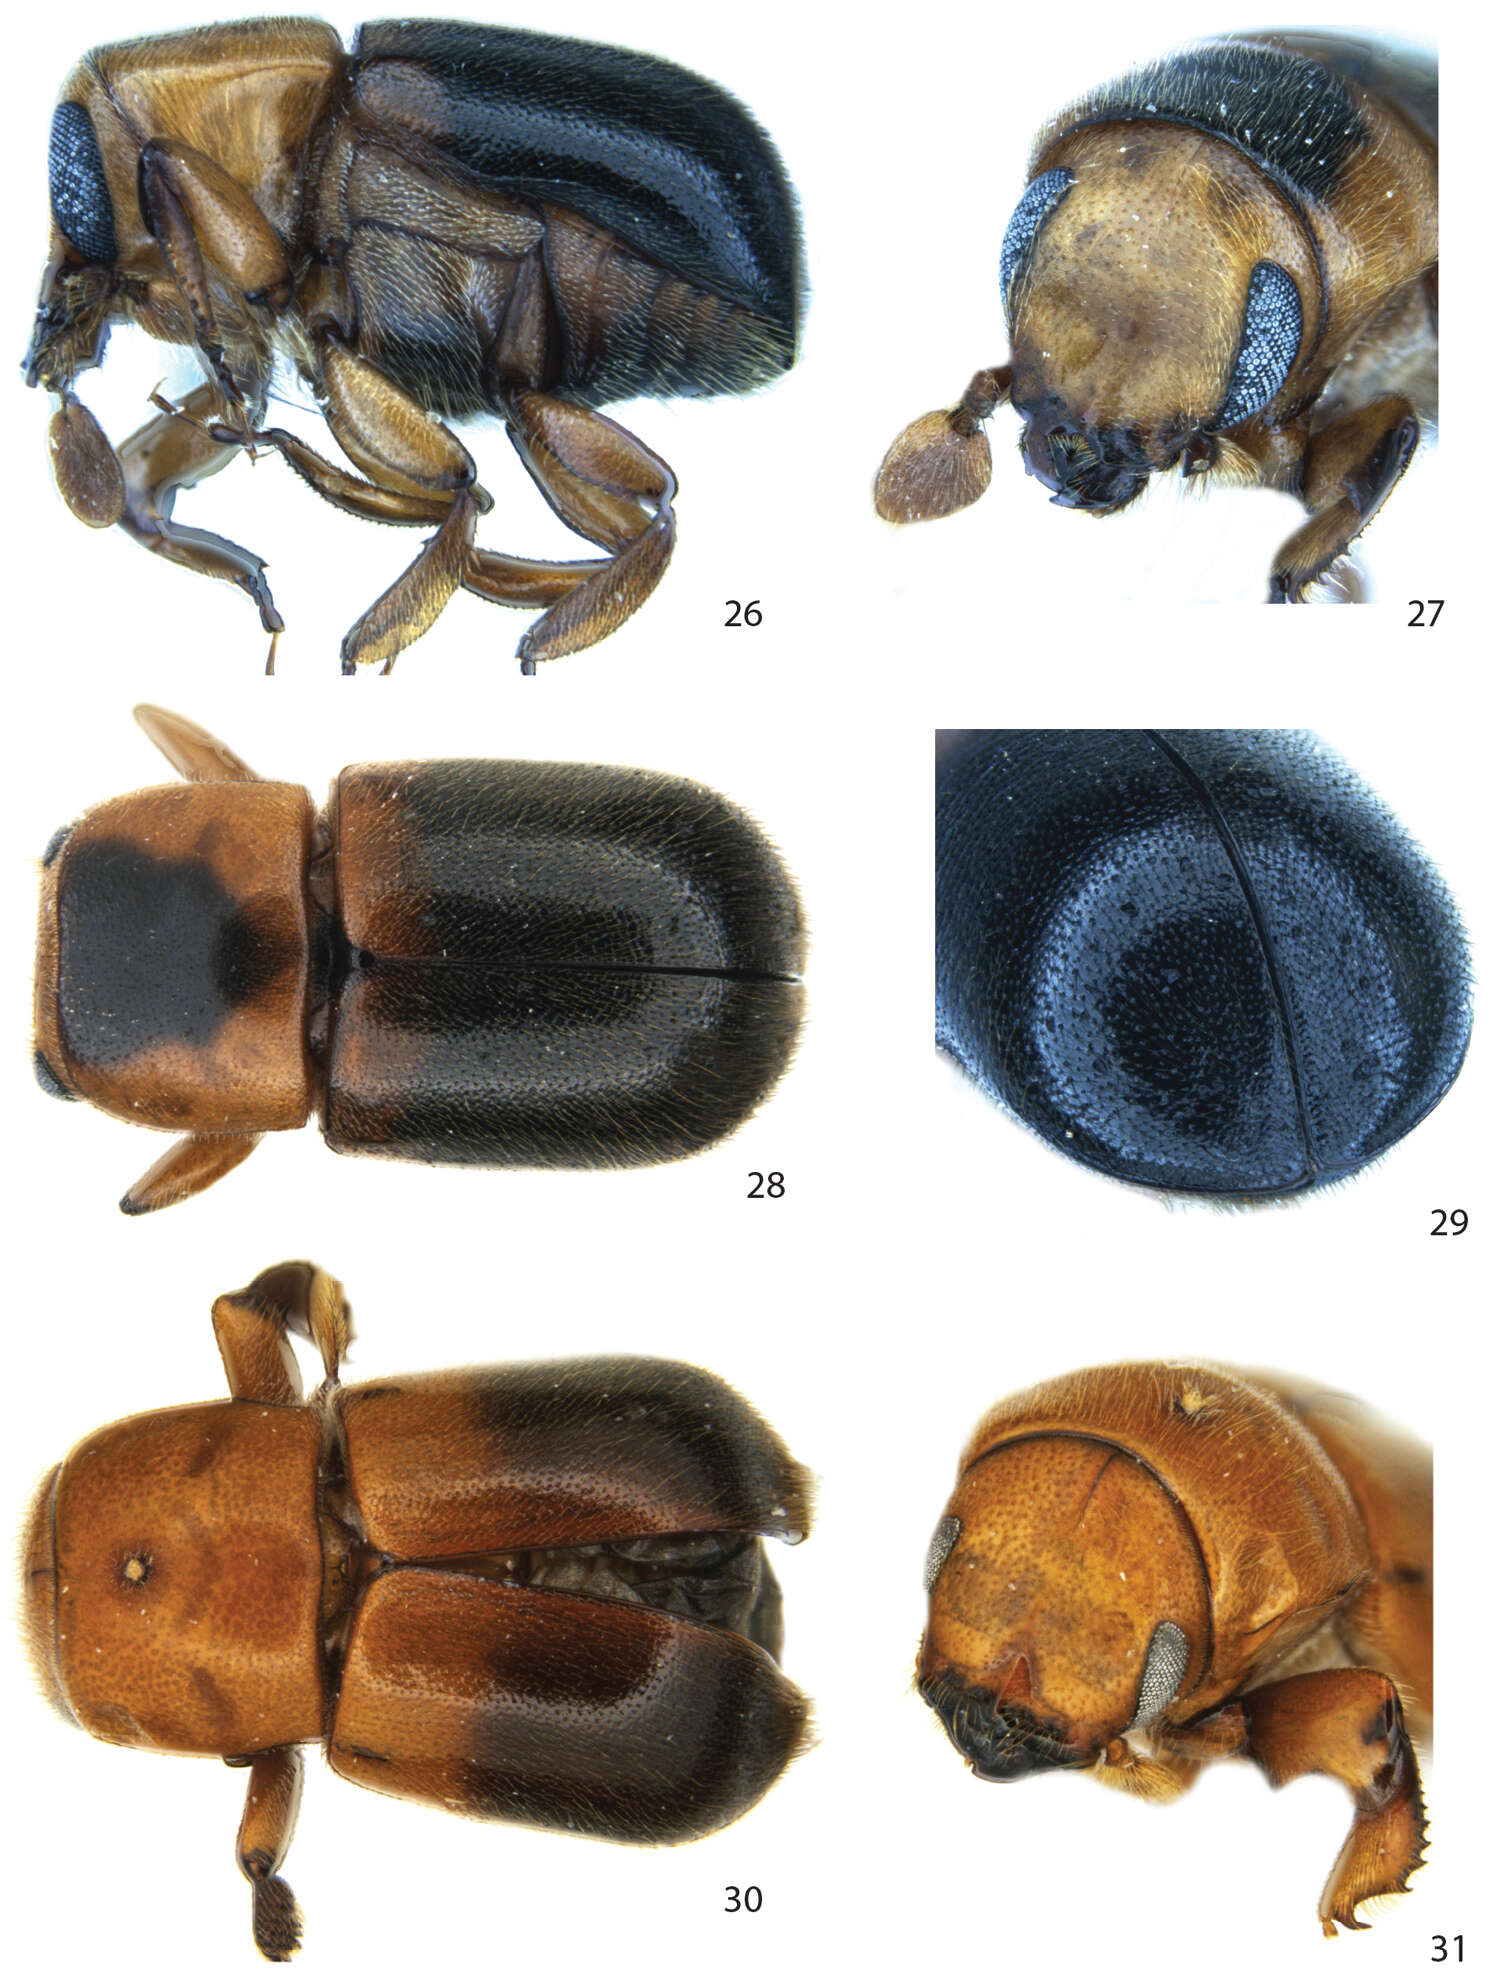 Image of Bark and Ambrosia Beetles